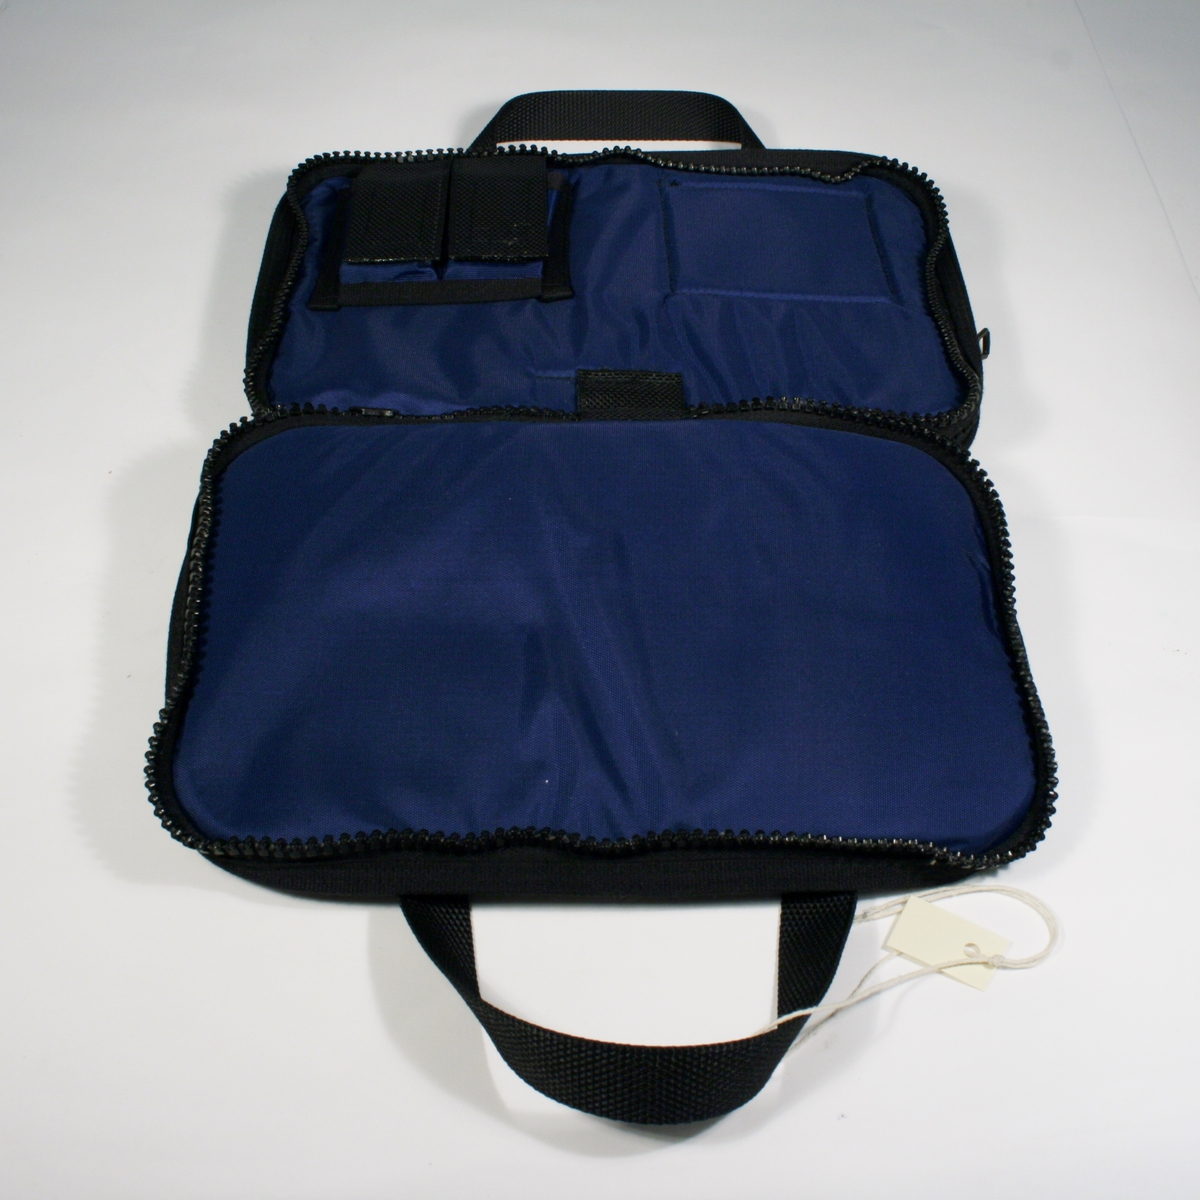 Blå rektangulær bag med sorte detaljer til oppbevaring av skrivesaker, forelegg etc. To lommer lukkes med glidelås og håndtak.